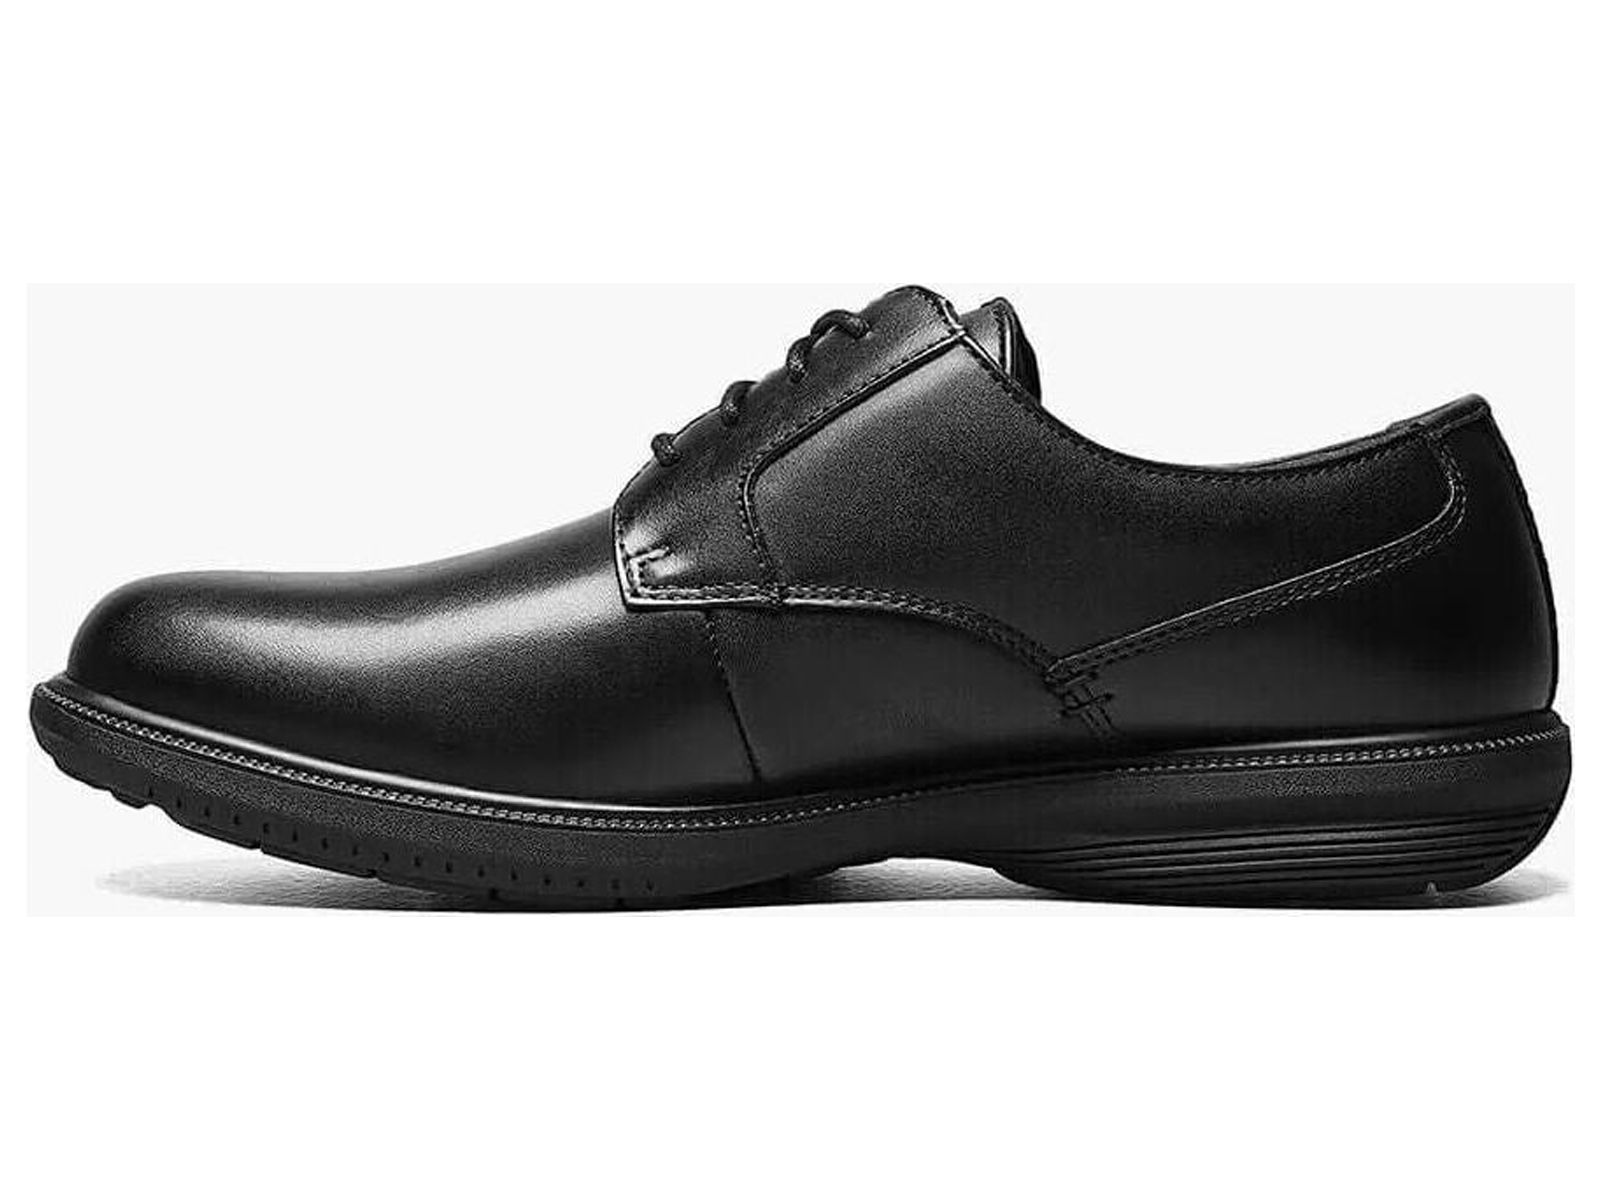 Nunn Bush Marvin Street Plain Toe Oxford Shoes Kore Leather Black 84715-001 - image 4 of 7